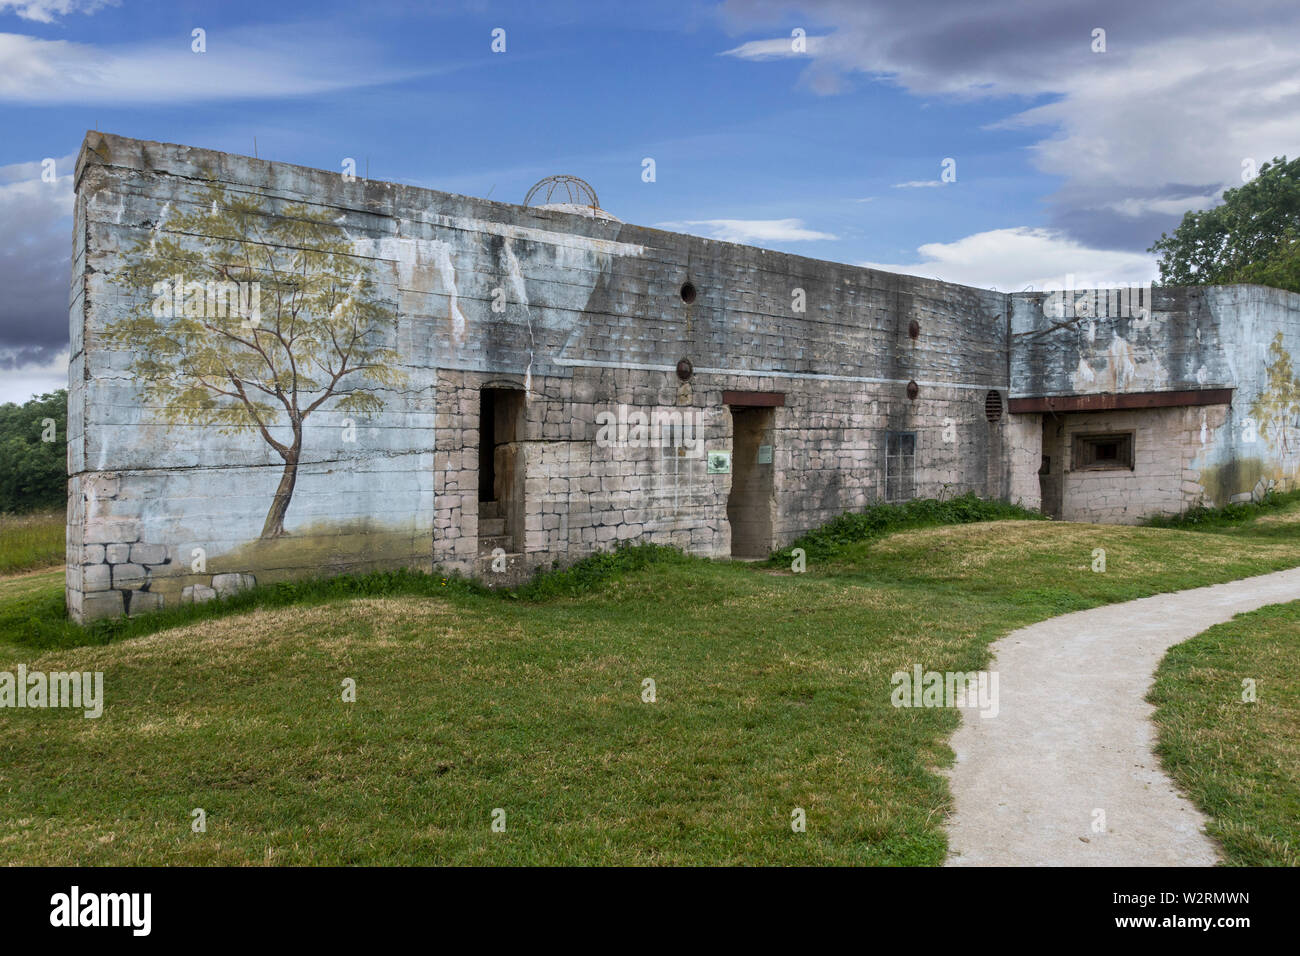 Tarnanstrich auf der Rückseite des Gun casemate/Artillerie Bunker des Zweiten Weltkriegs Batterie d'Azeville Batterie, Teil der Deutschen Atlantic Wall, Normandie, Frankreich Stockfoto